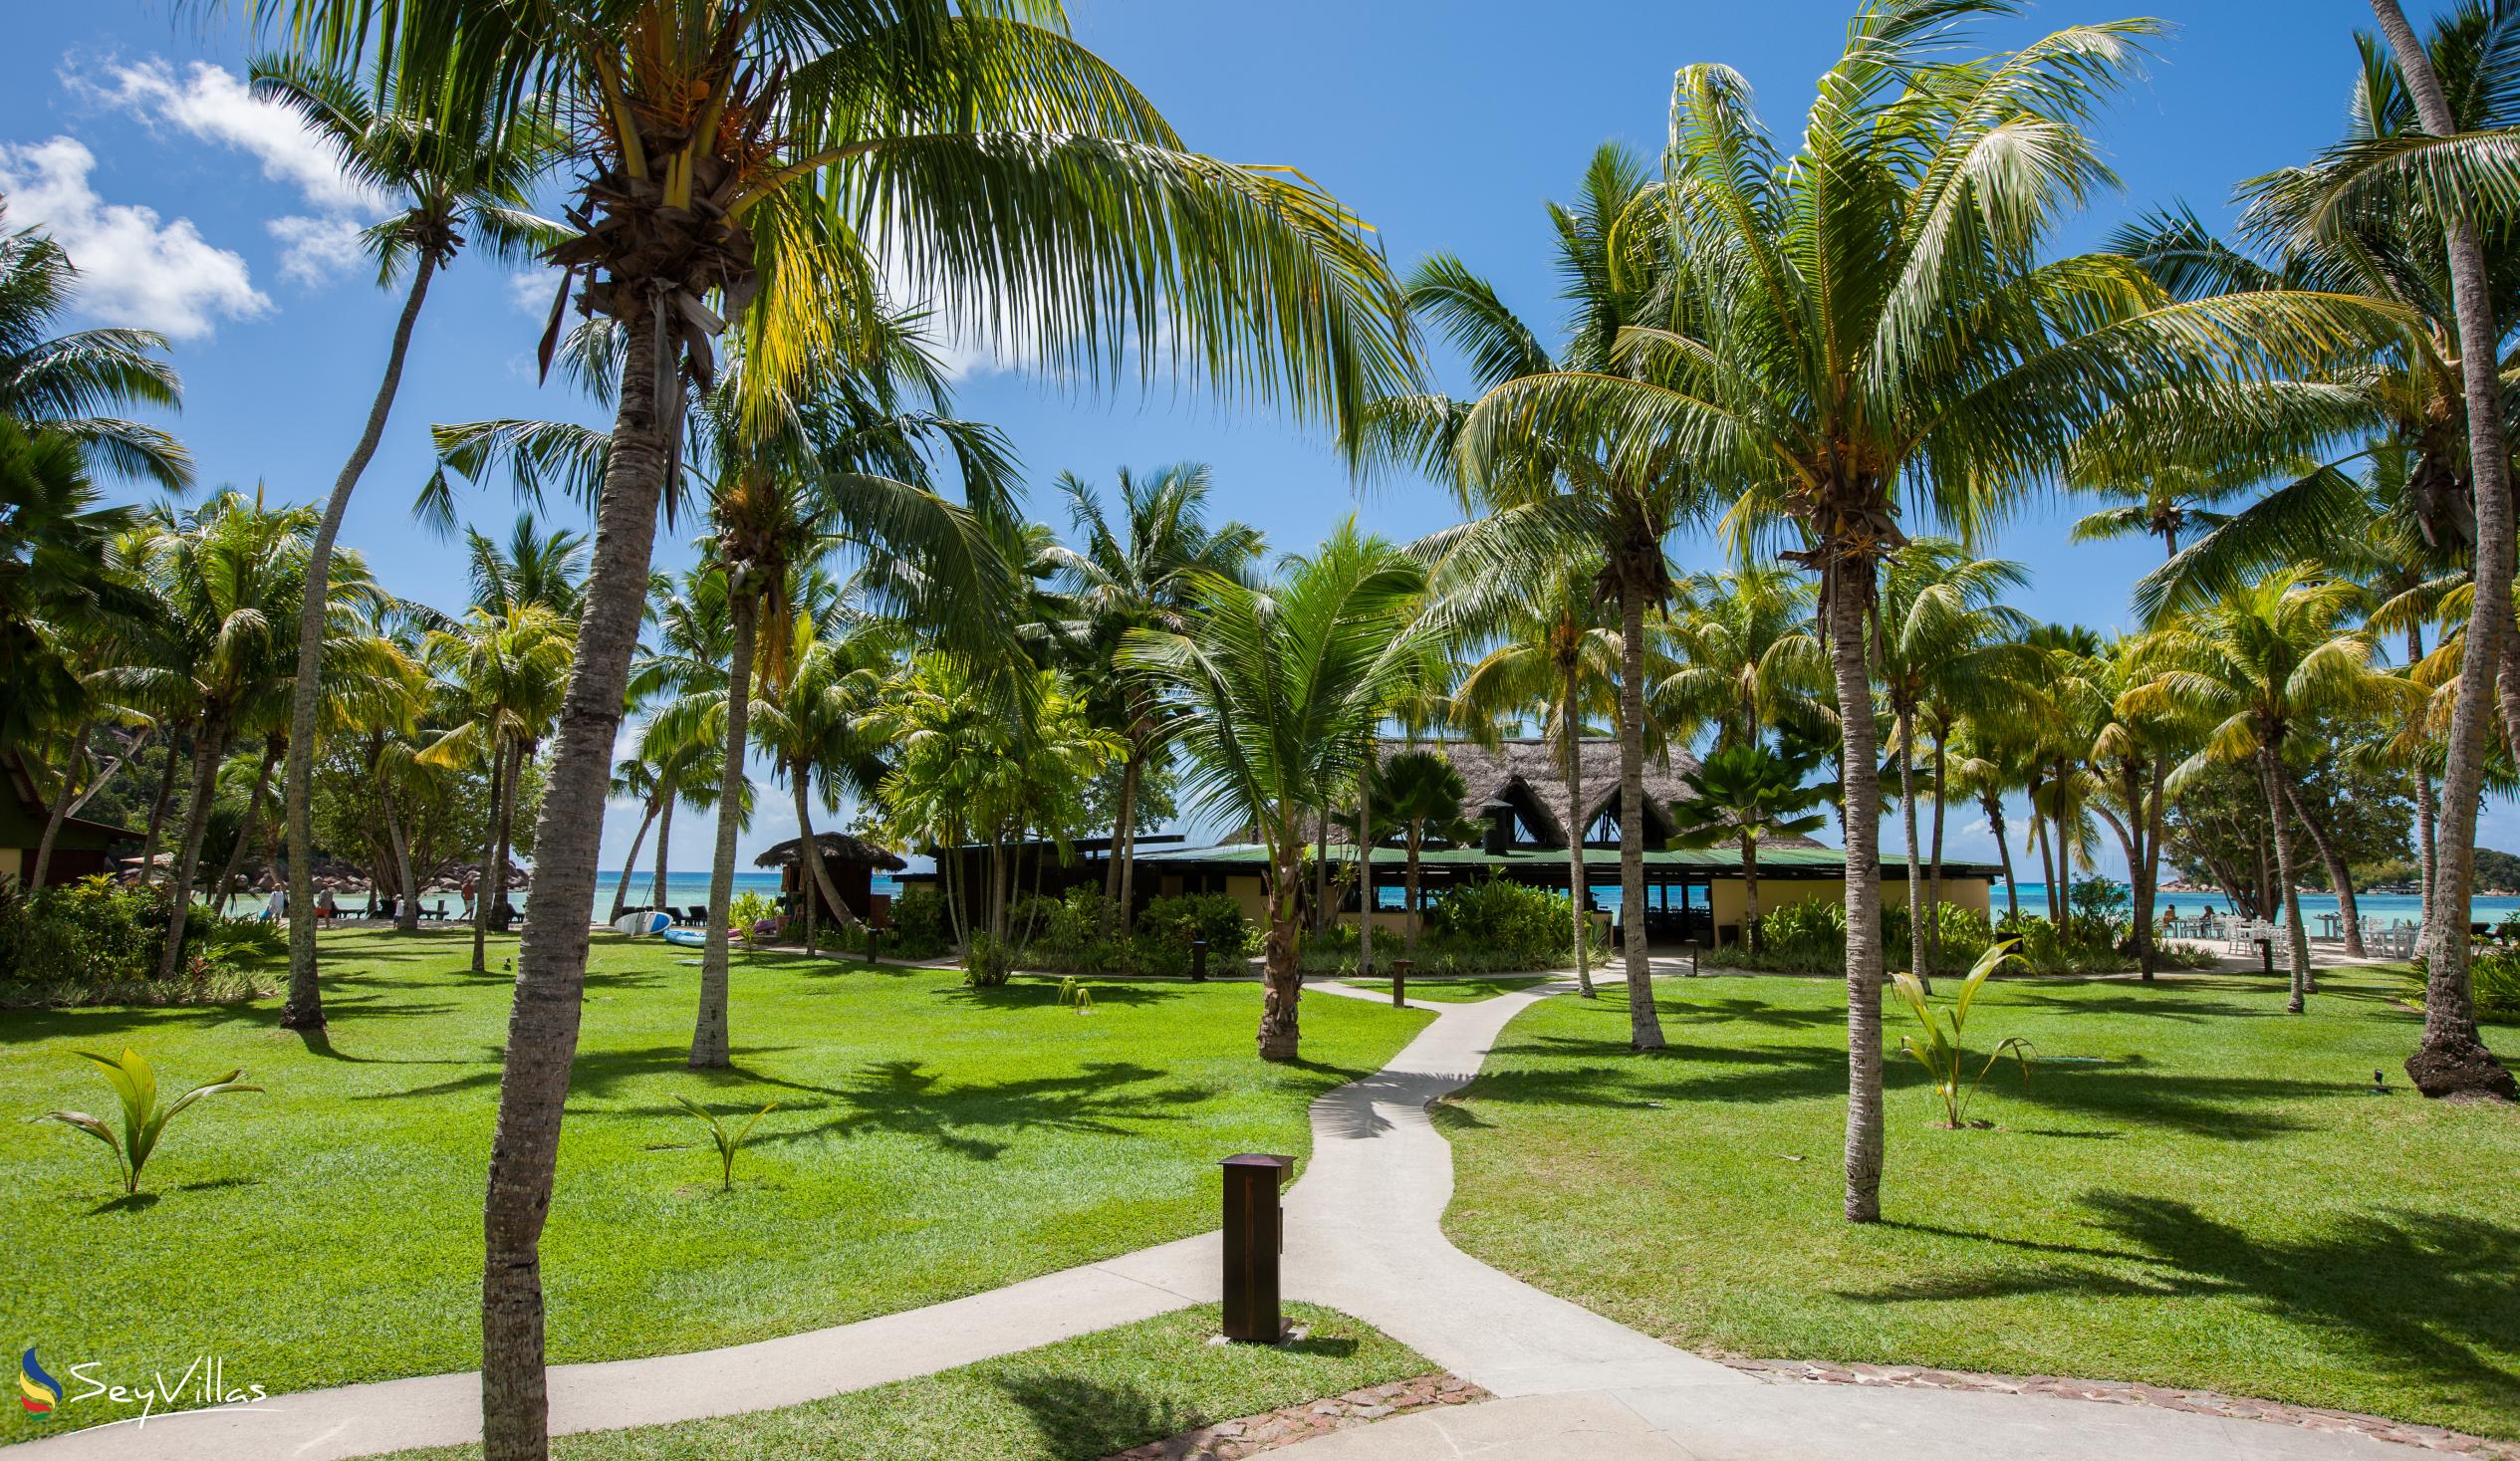 Foto 16: Paradise Sun Hotel - Aussenbereich - Praslin (Seychellen)